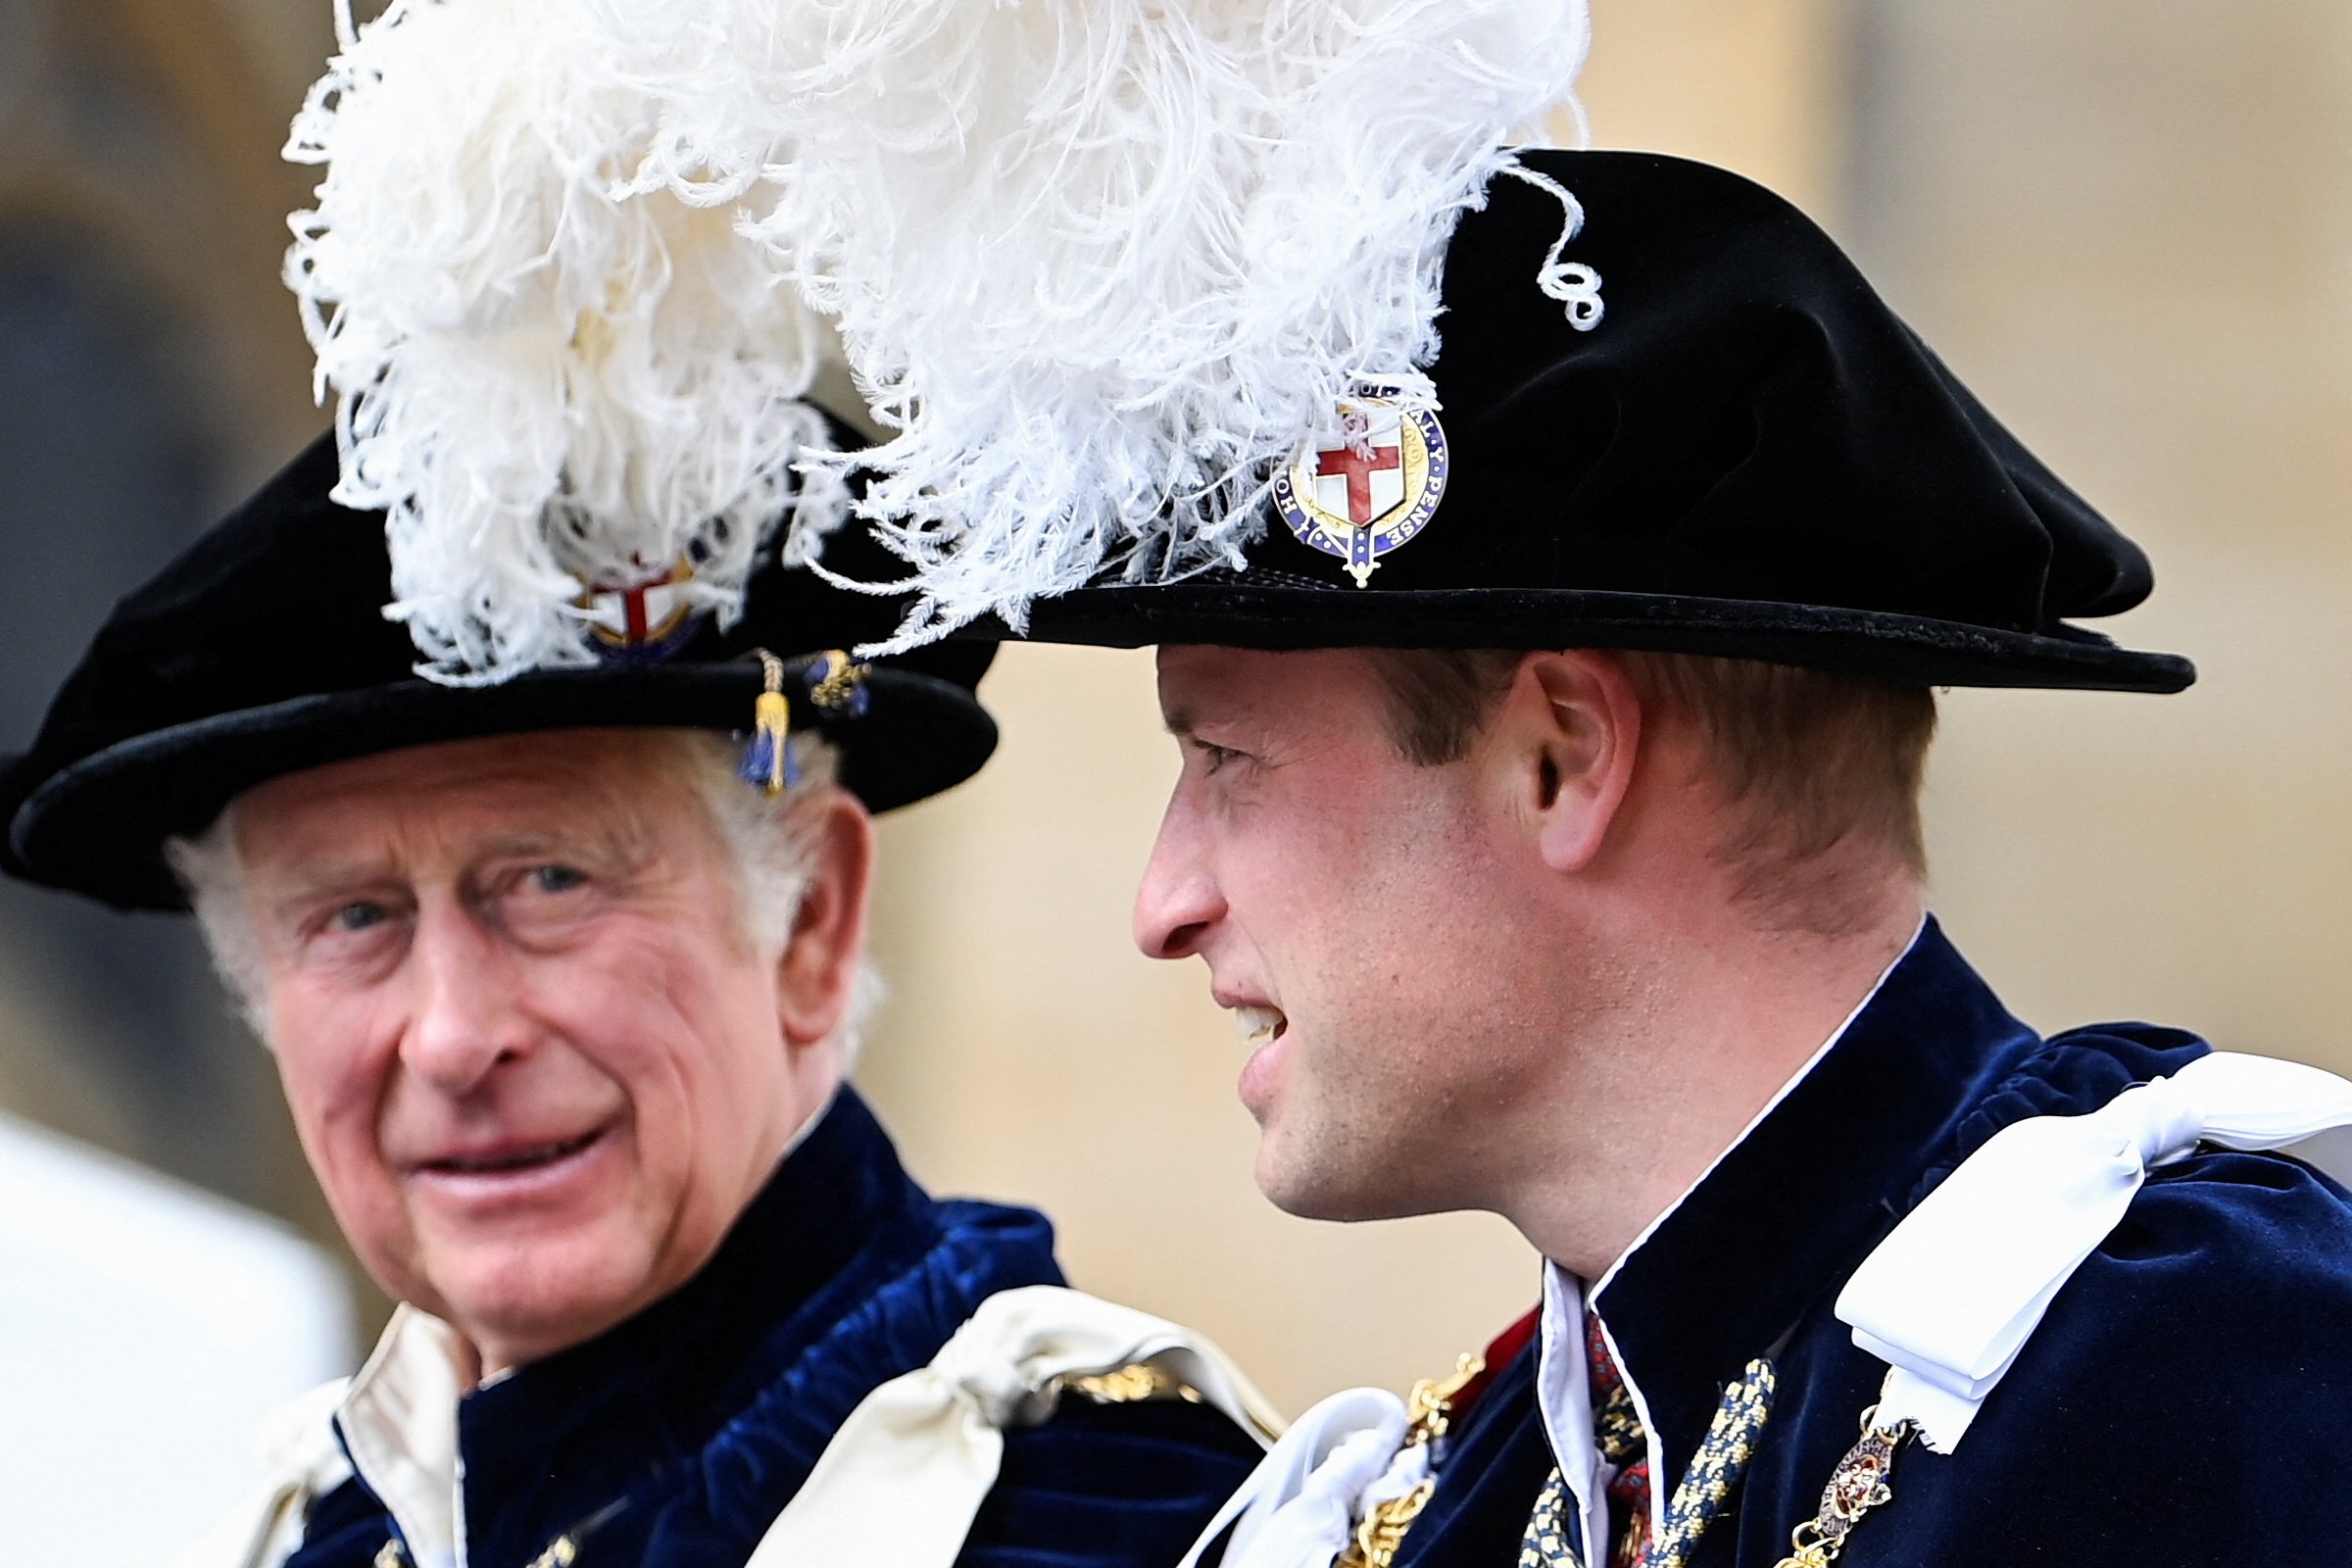 Carles III ha impedit que el seu fill Guillem deixi a Kate Middleton, tenia dubtes sobre la seva relació